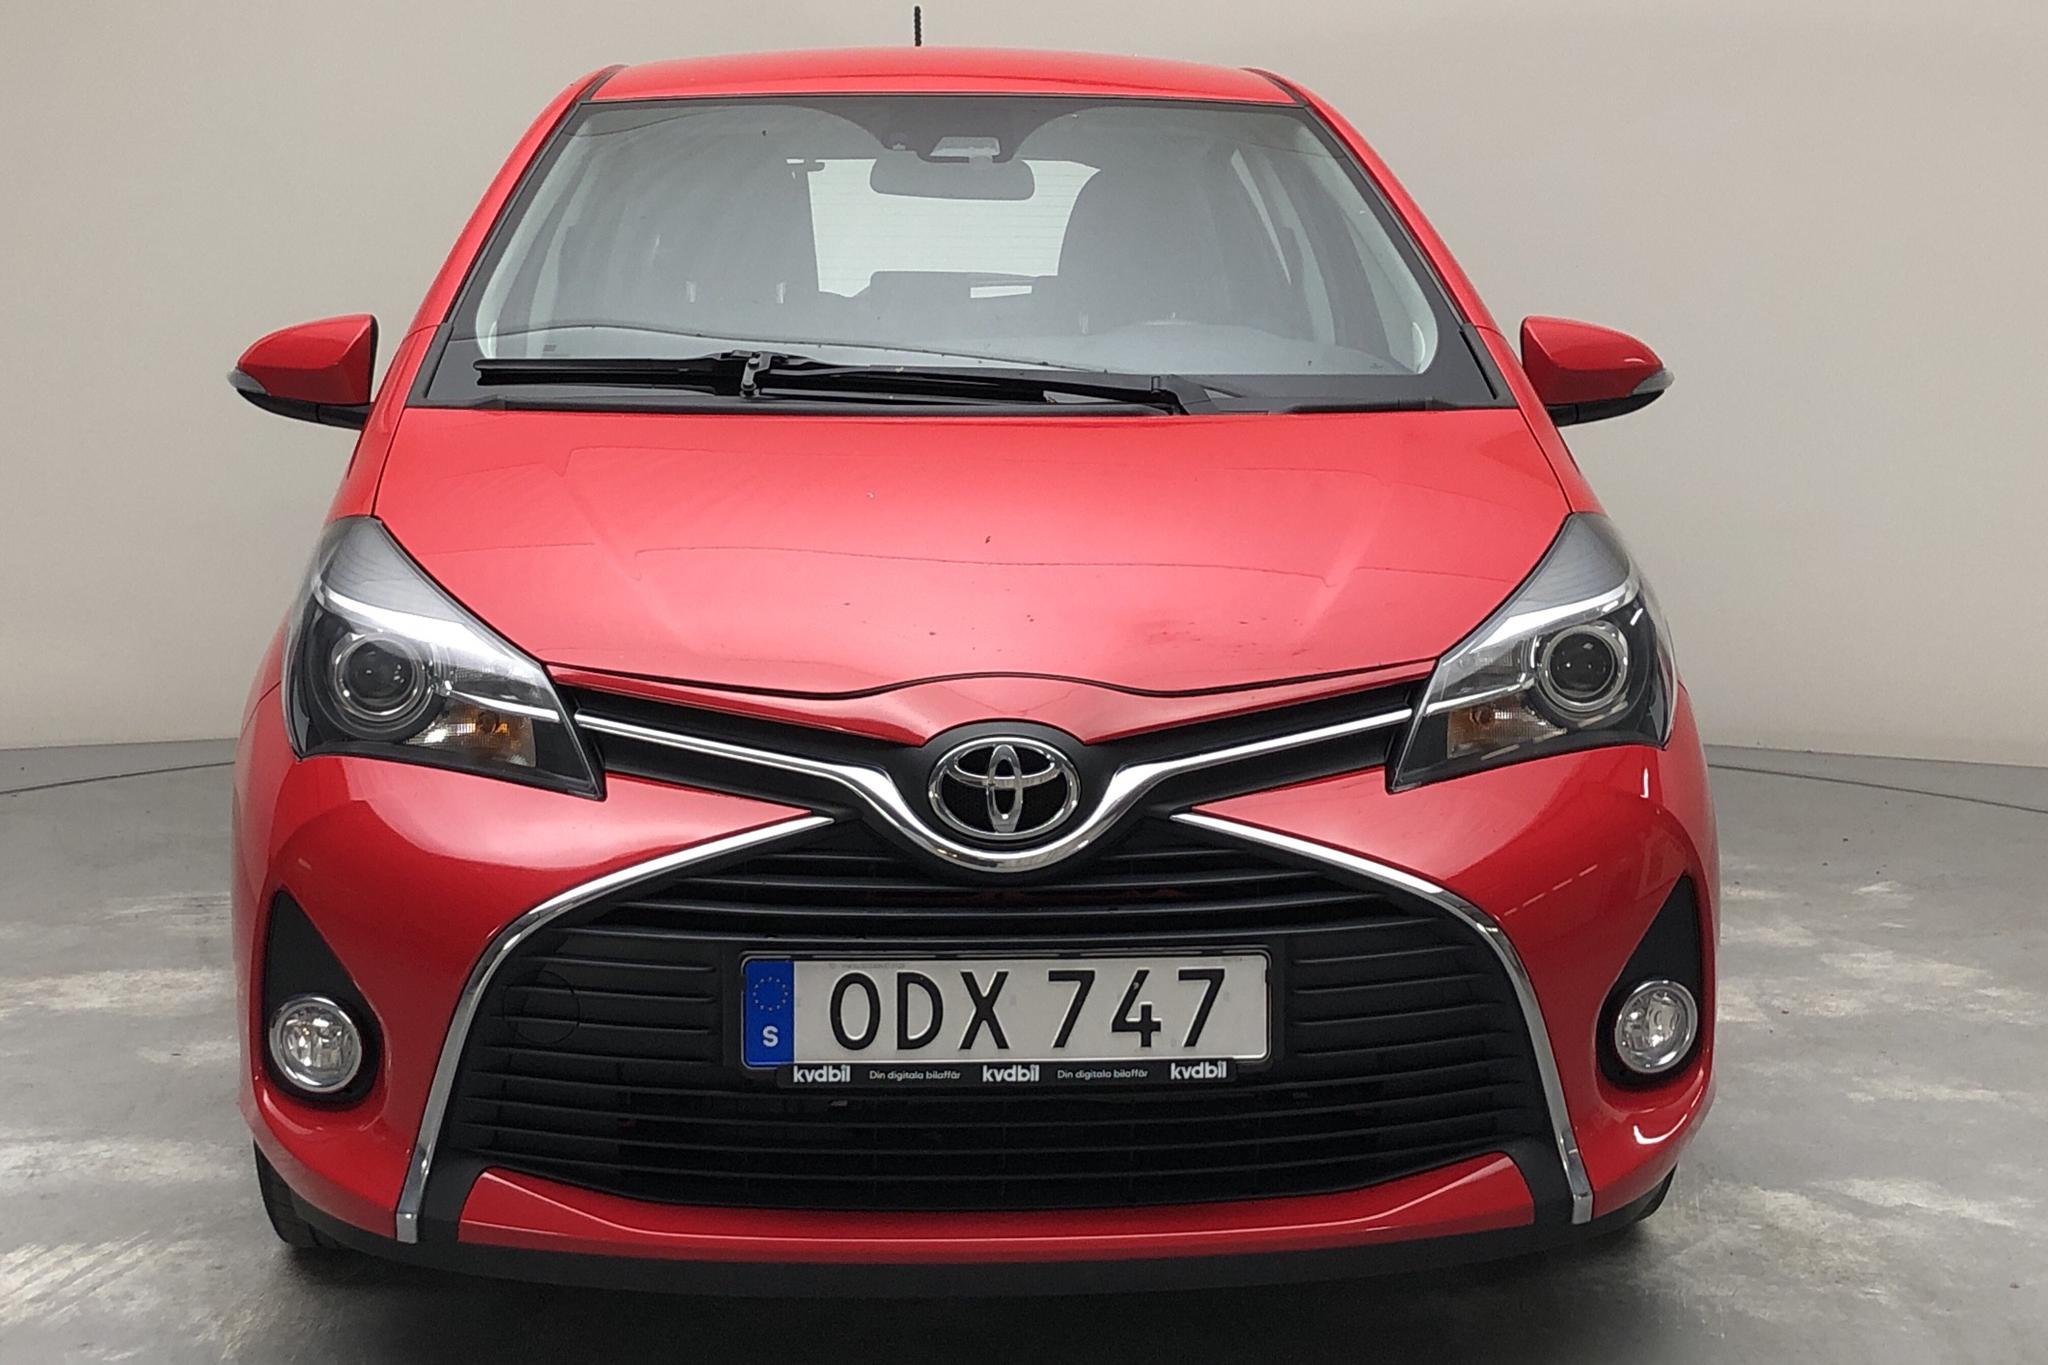 Toyota Yaris 1.33 5dr (100hk) - 87 460 km - Manual - red - 2016